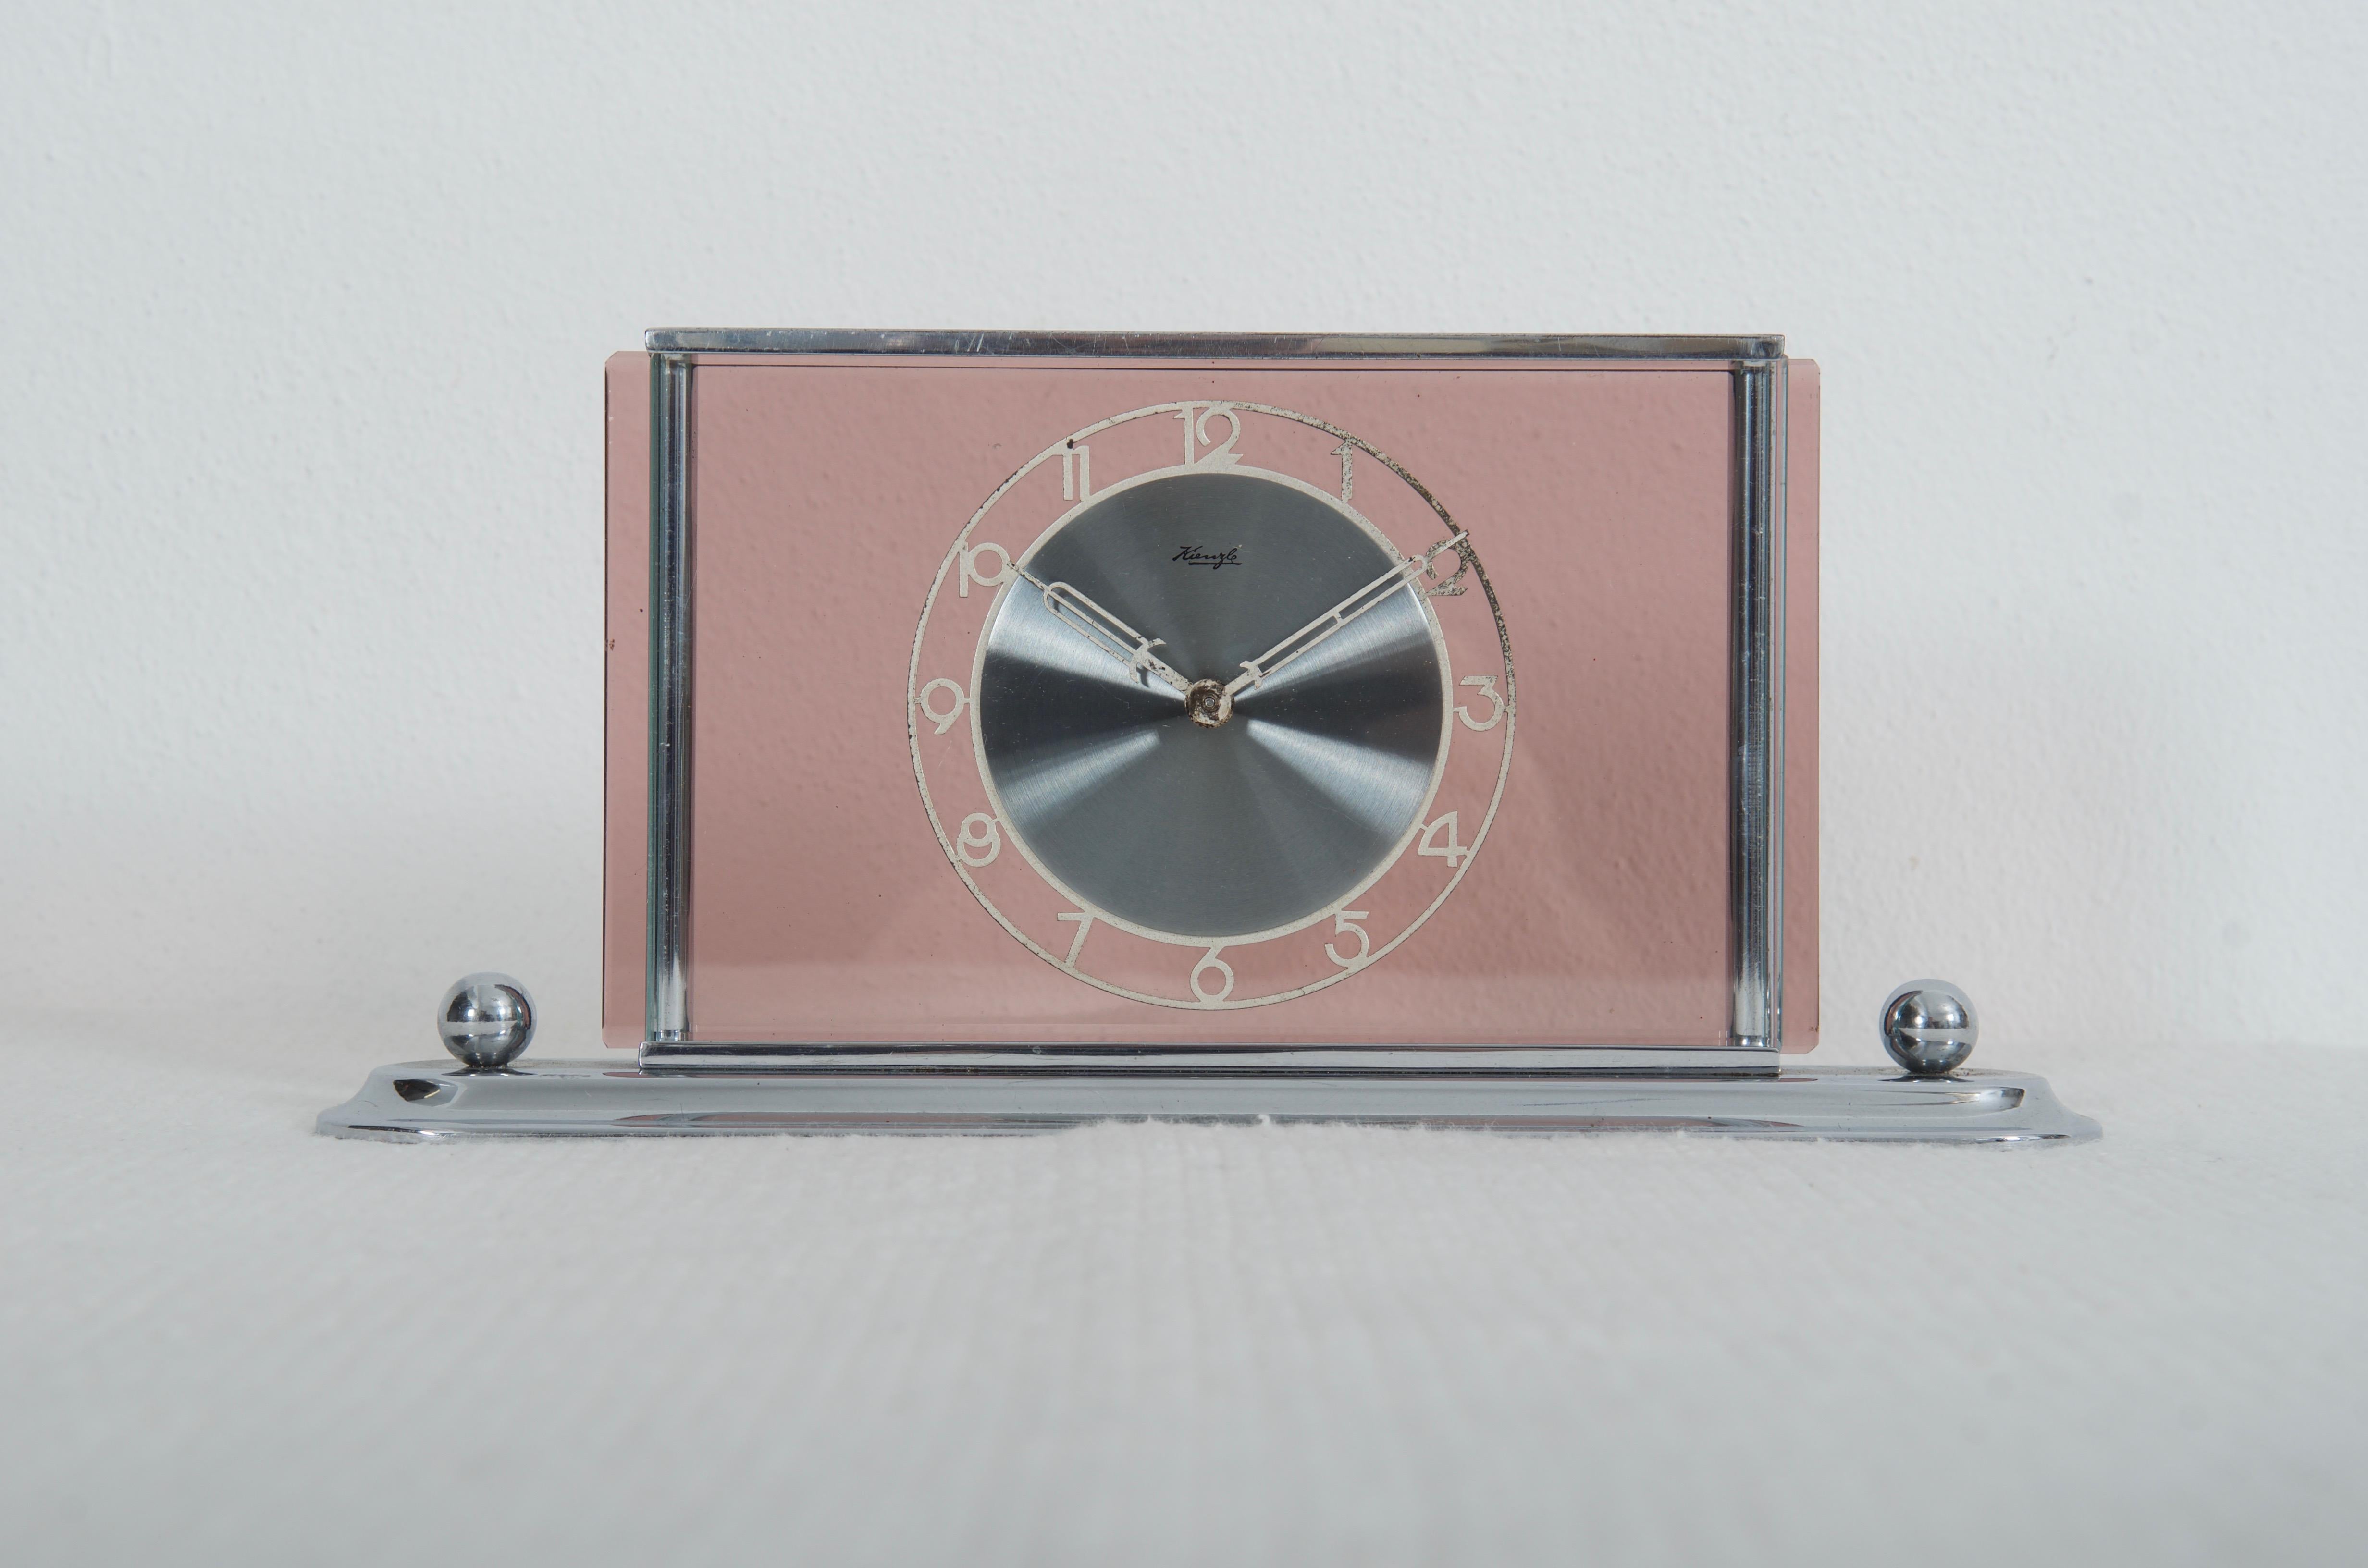 Messingrahmen, vernickeltes Ziffernblatt aus poliertem Stahl, befestigt auf rosafarbenem Glas, hergestellt von Kienzl in den späten 1930er Jahren. Ausgestattet mit einem mechanischen Uhrwerk. Auf Wunsch kann auf eine Batterie umgebaut werden.
 